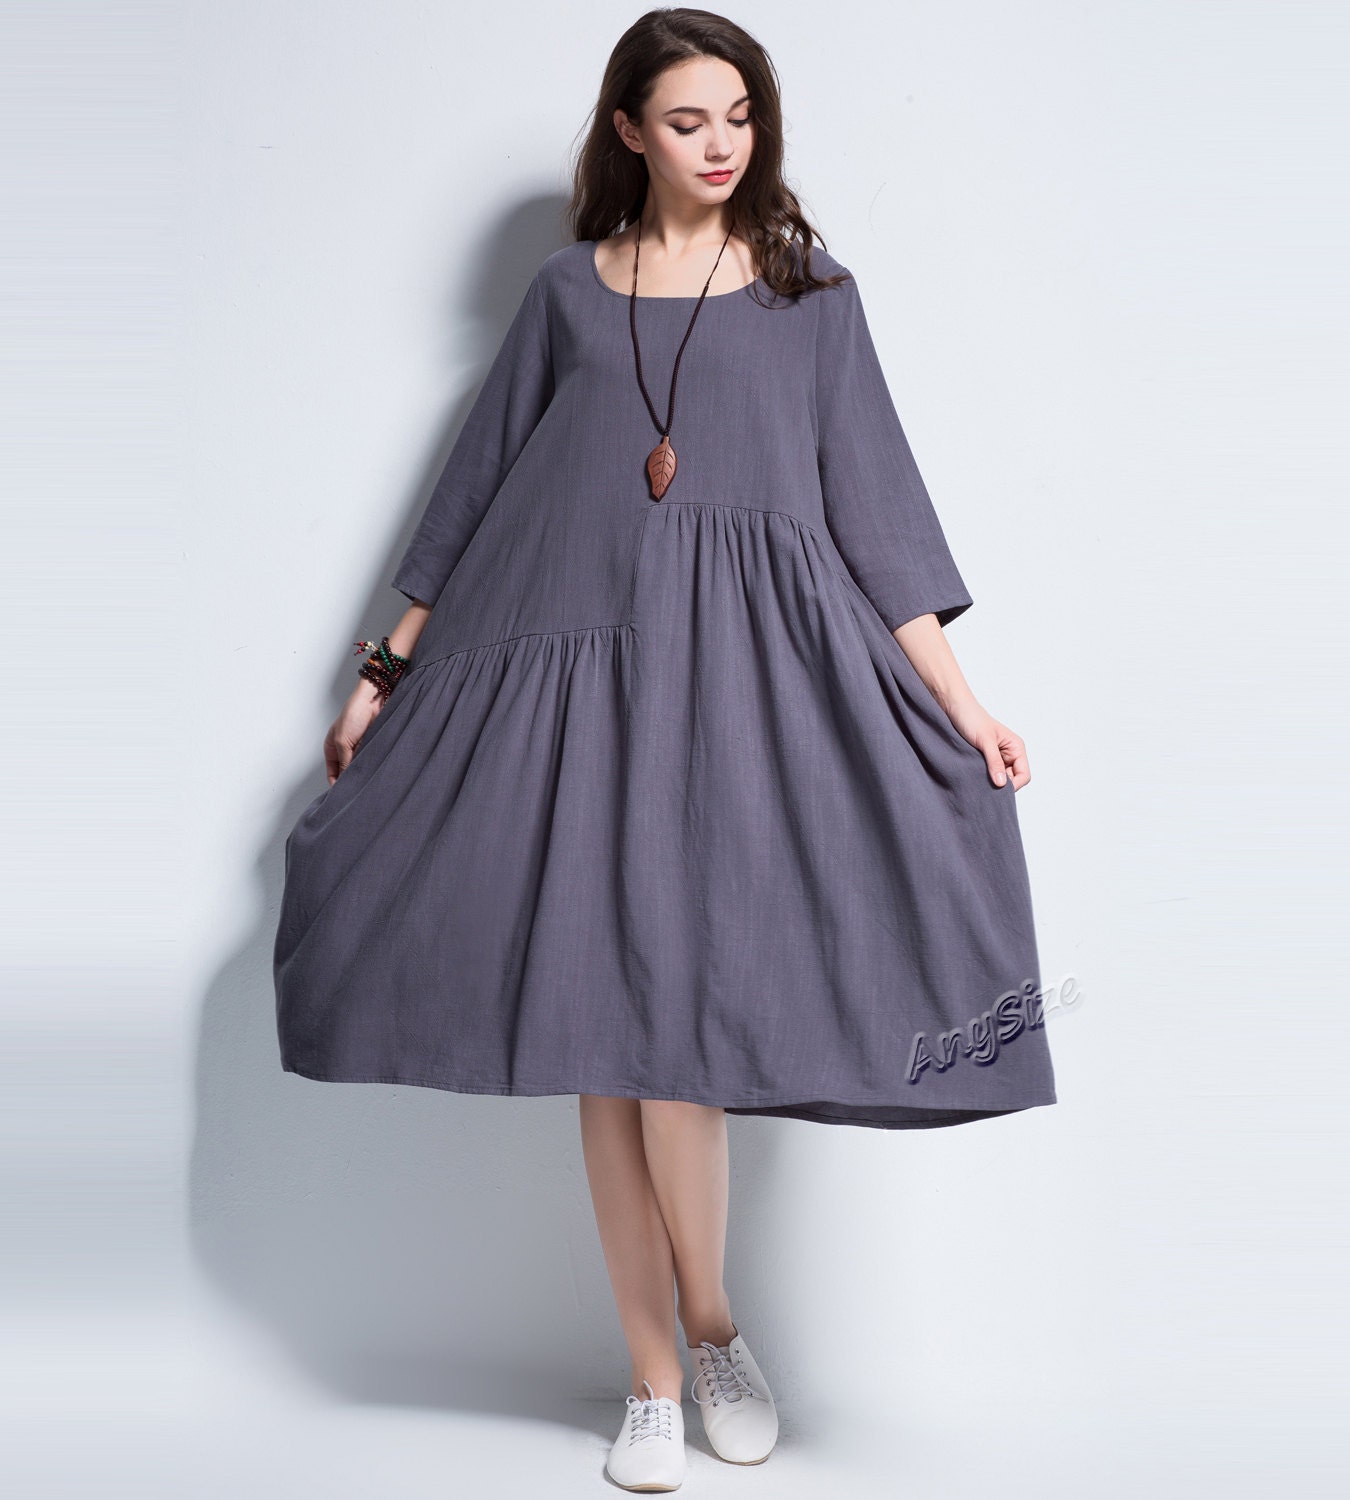 Anysize spring summer soft linen&cotton A-line dress plus size